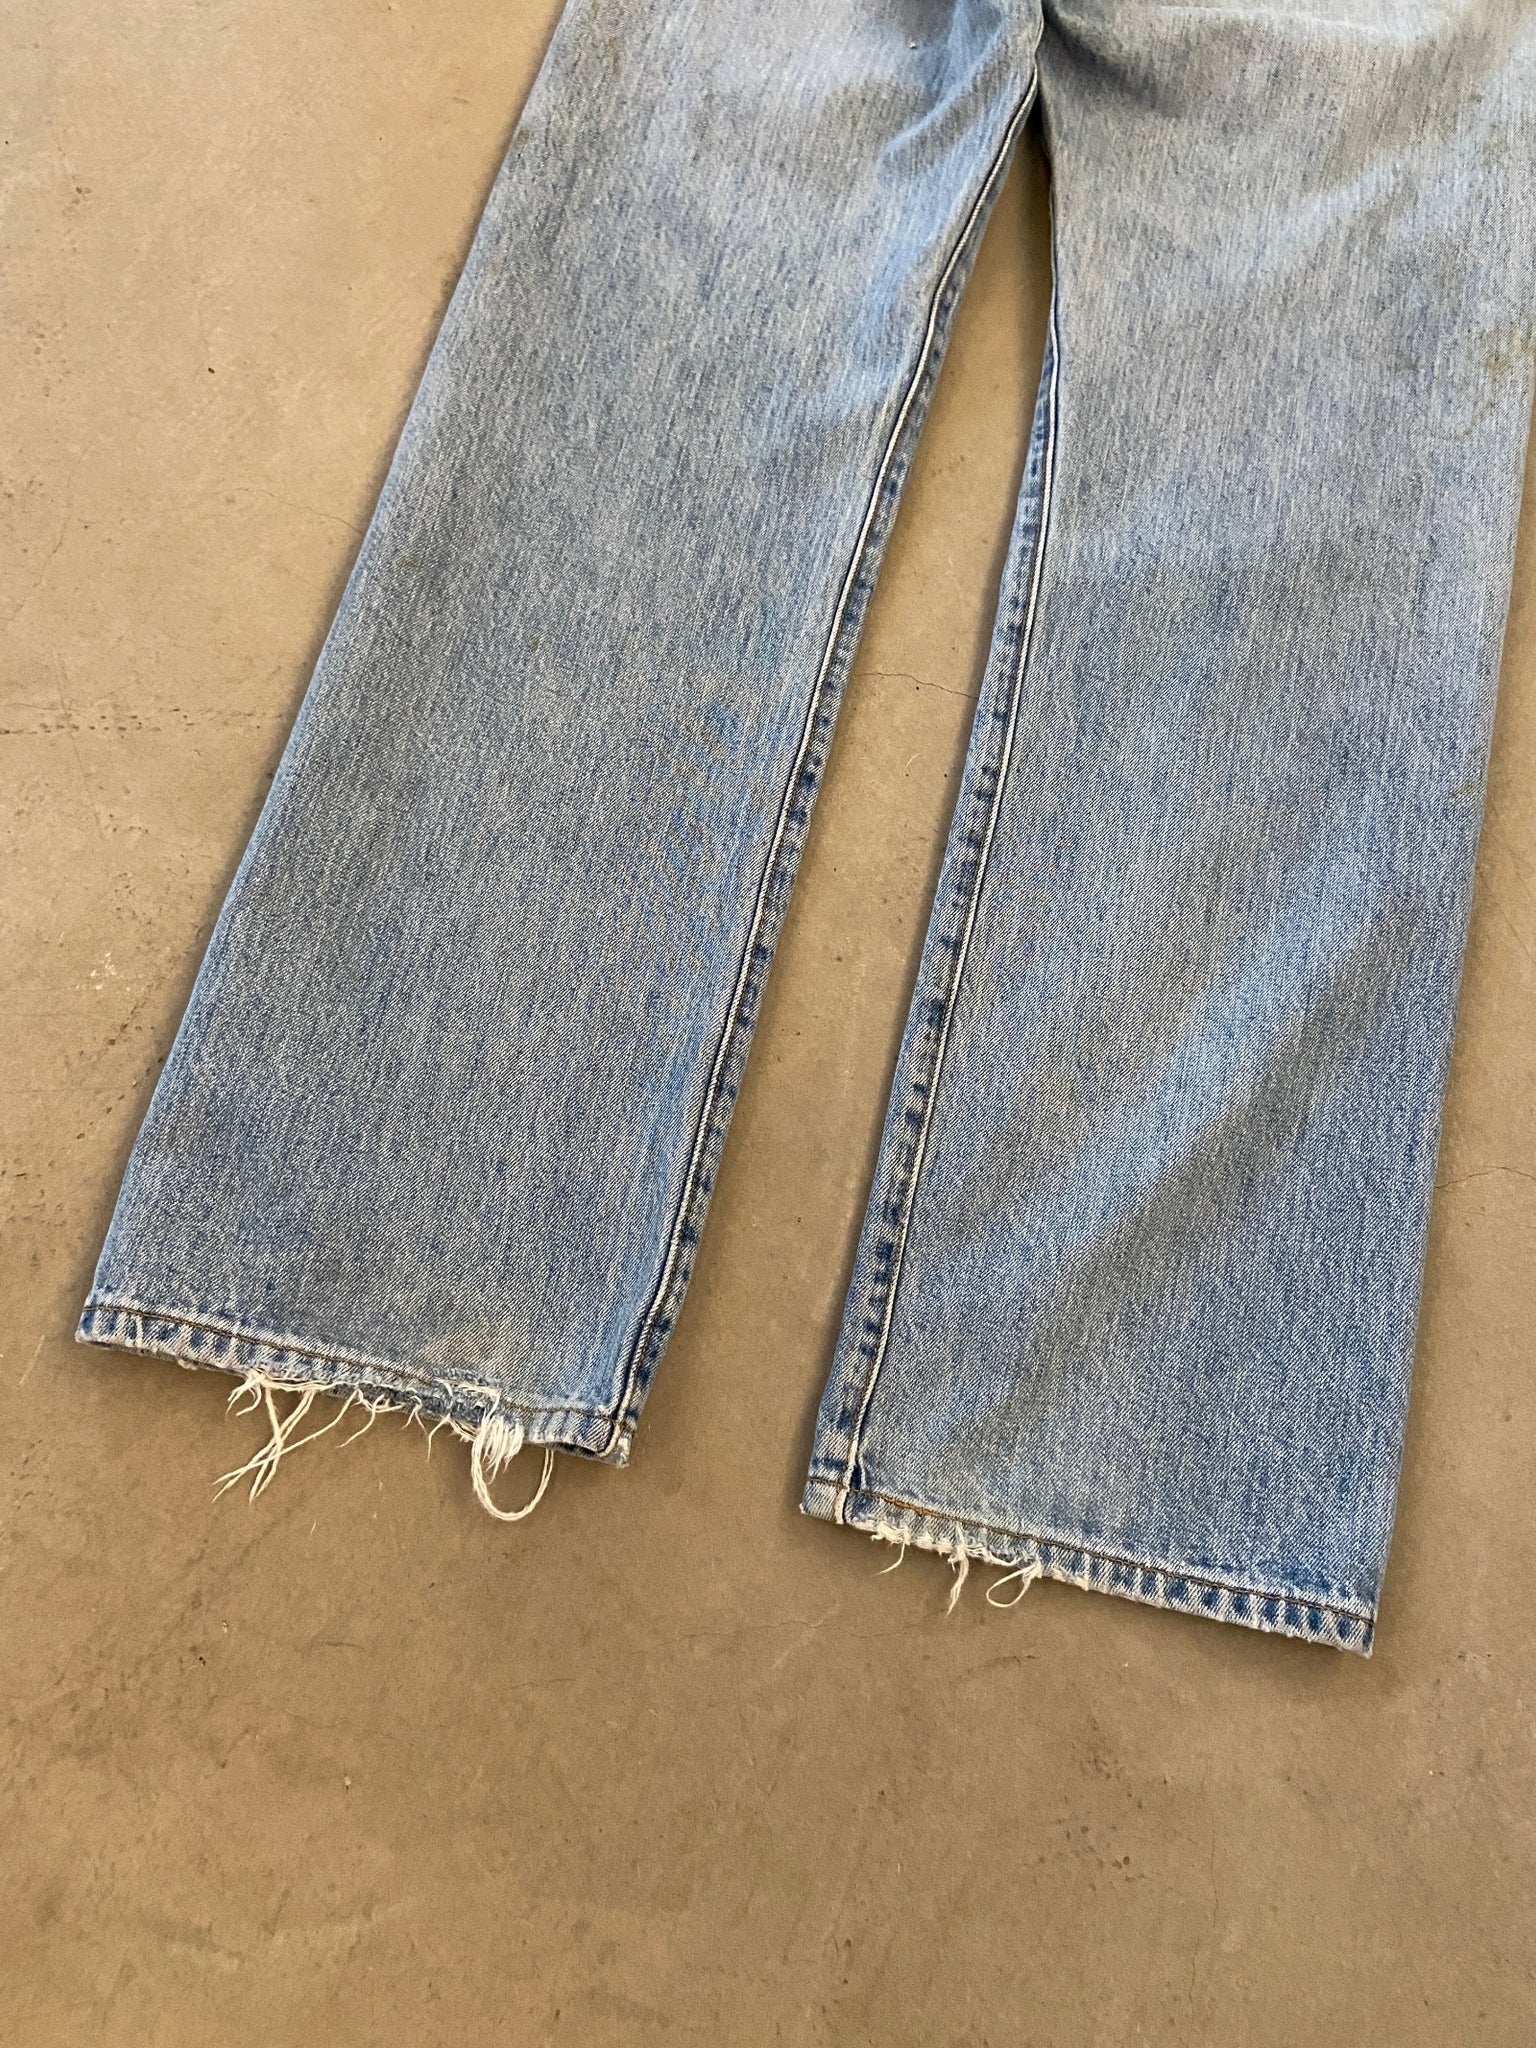 Levi's 501 Jeans - 36 x 34